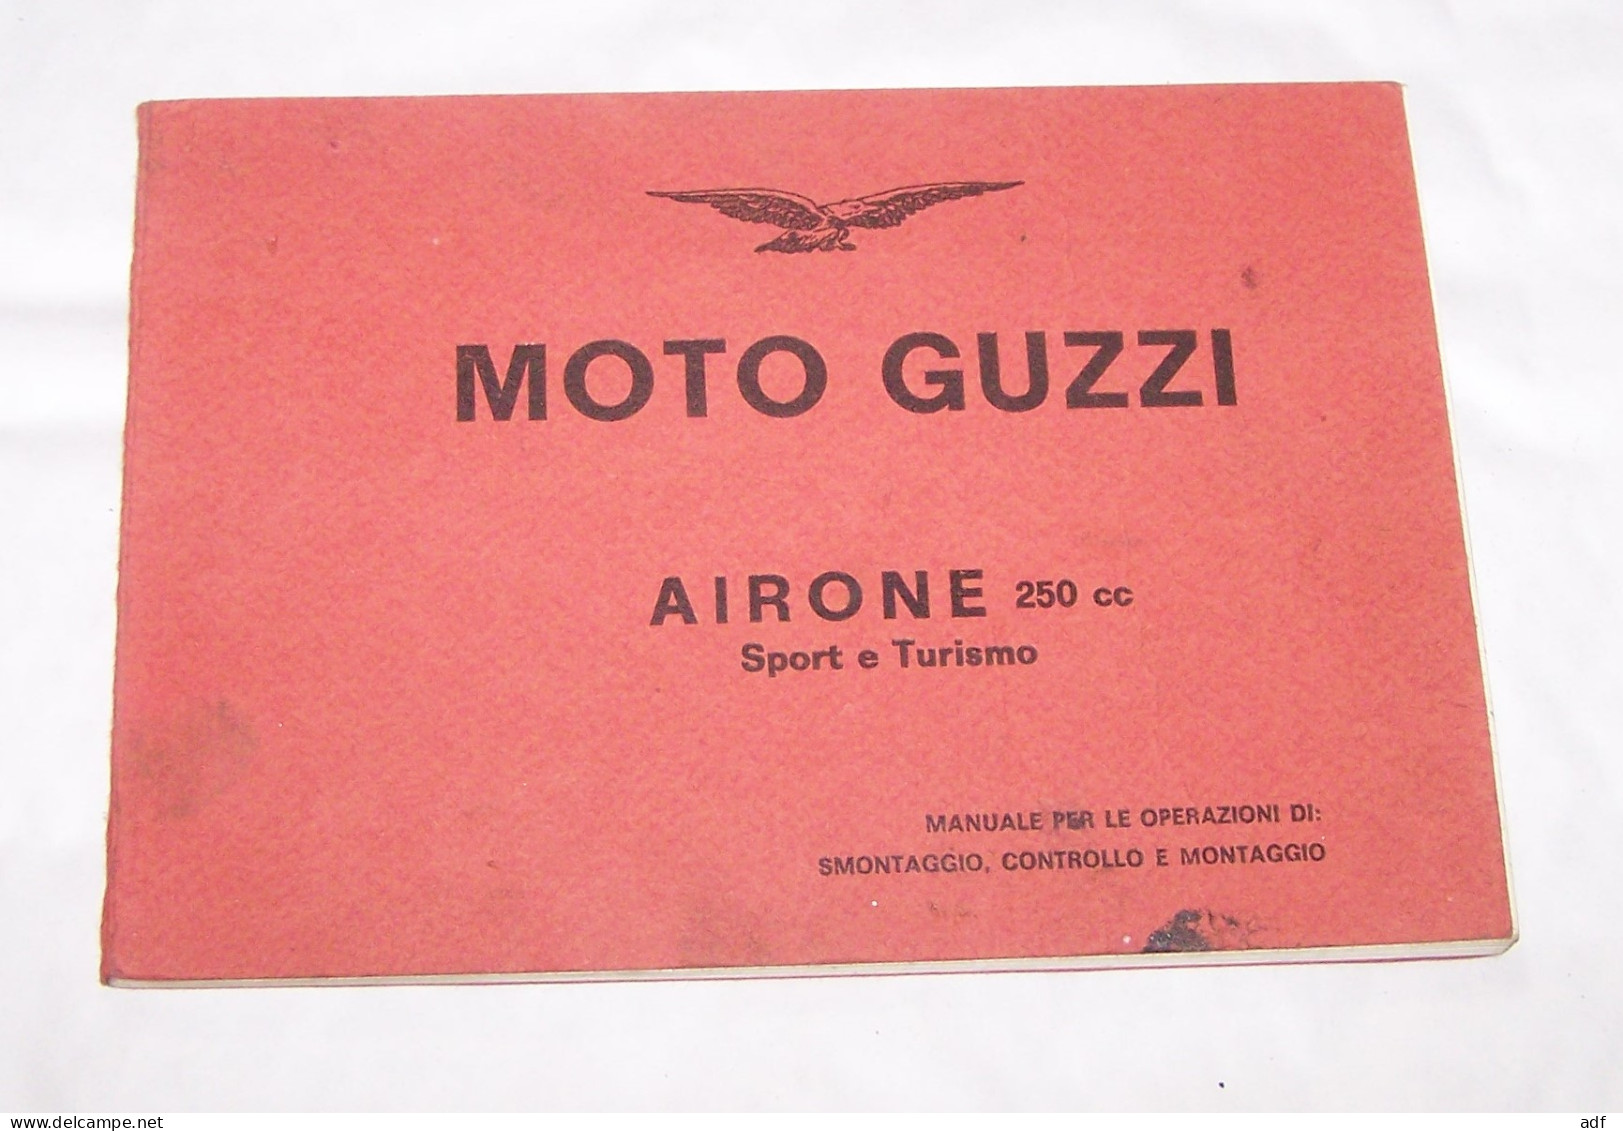 MOTO GUZZI AIRONE 250 CC SPORT ET TURISMO MANUALE PER LE OPERAZIONI DI SIMONTAGGIO, CONTROLLO E MONTAGGIO, MANUEL - Moto